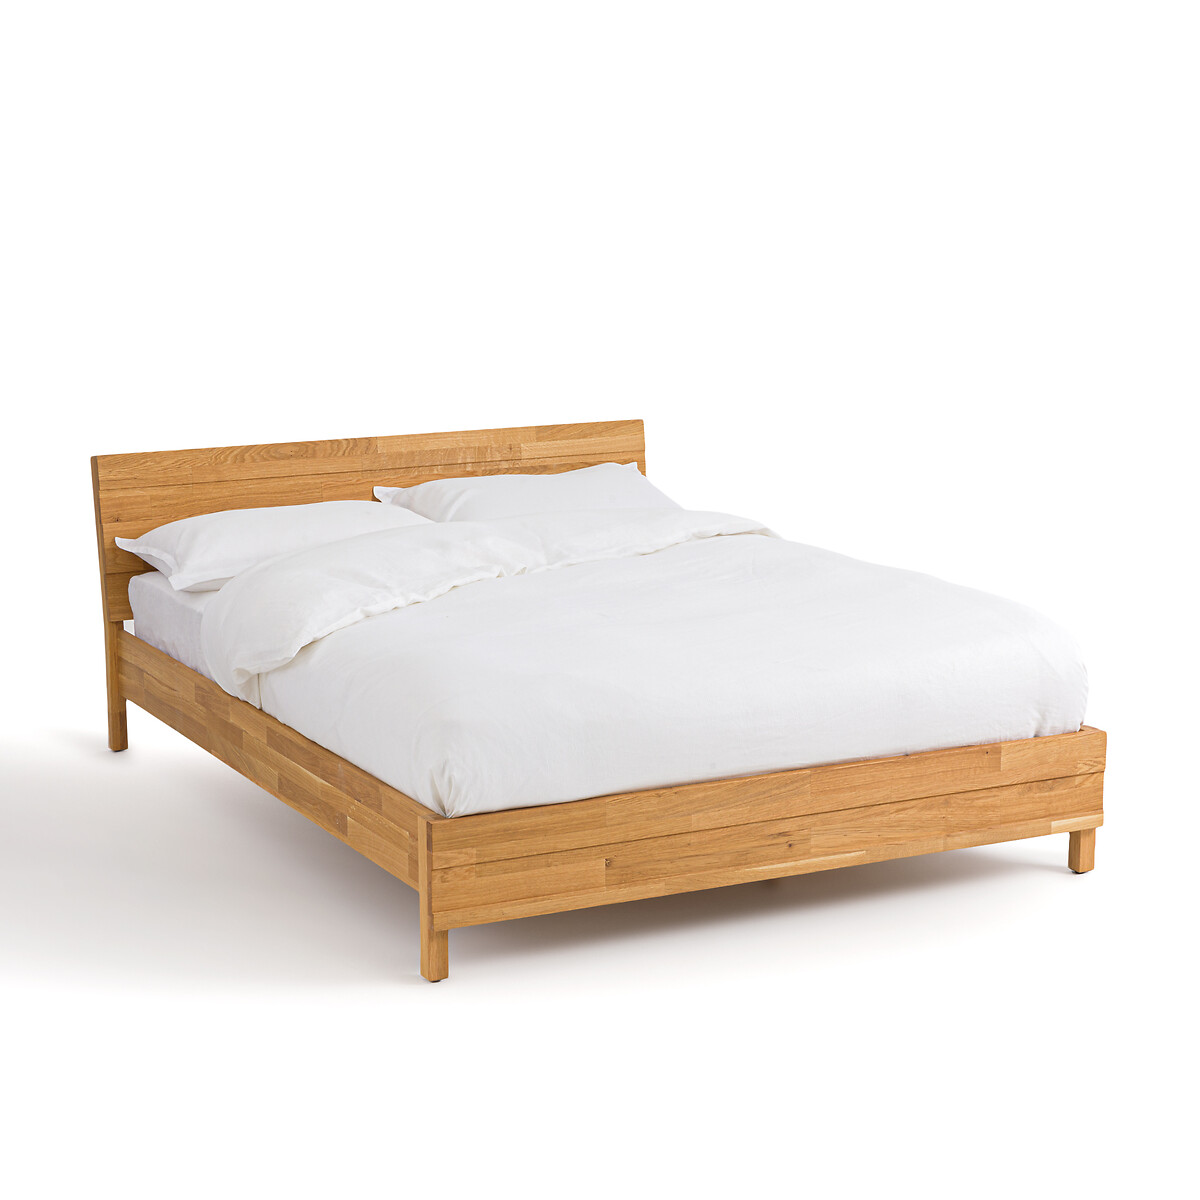 Кровать LaRedoute Кровать Из массива дуба с соединением встык Ariles 160 x 200 см желтый